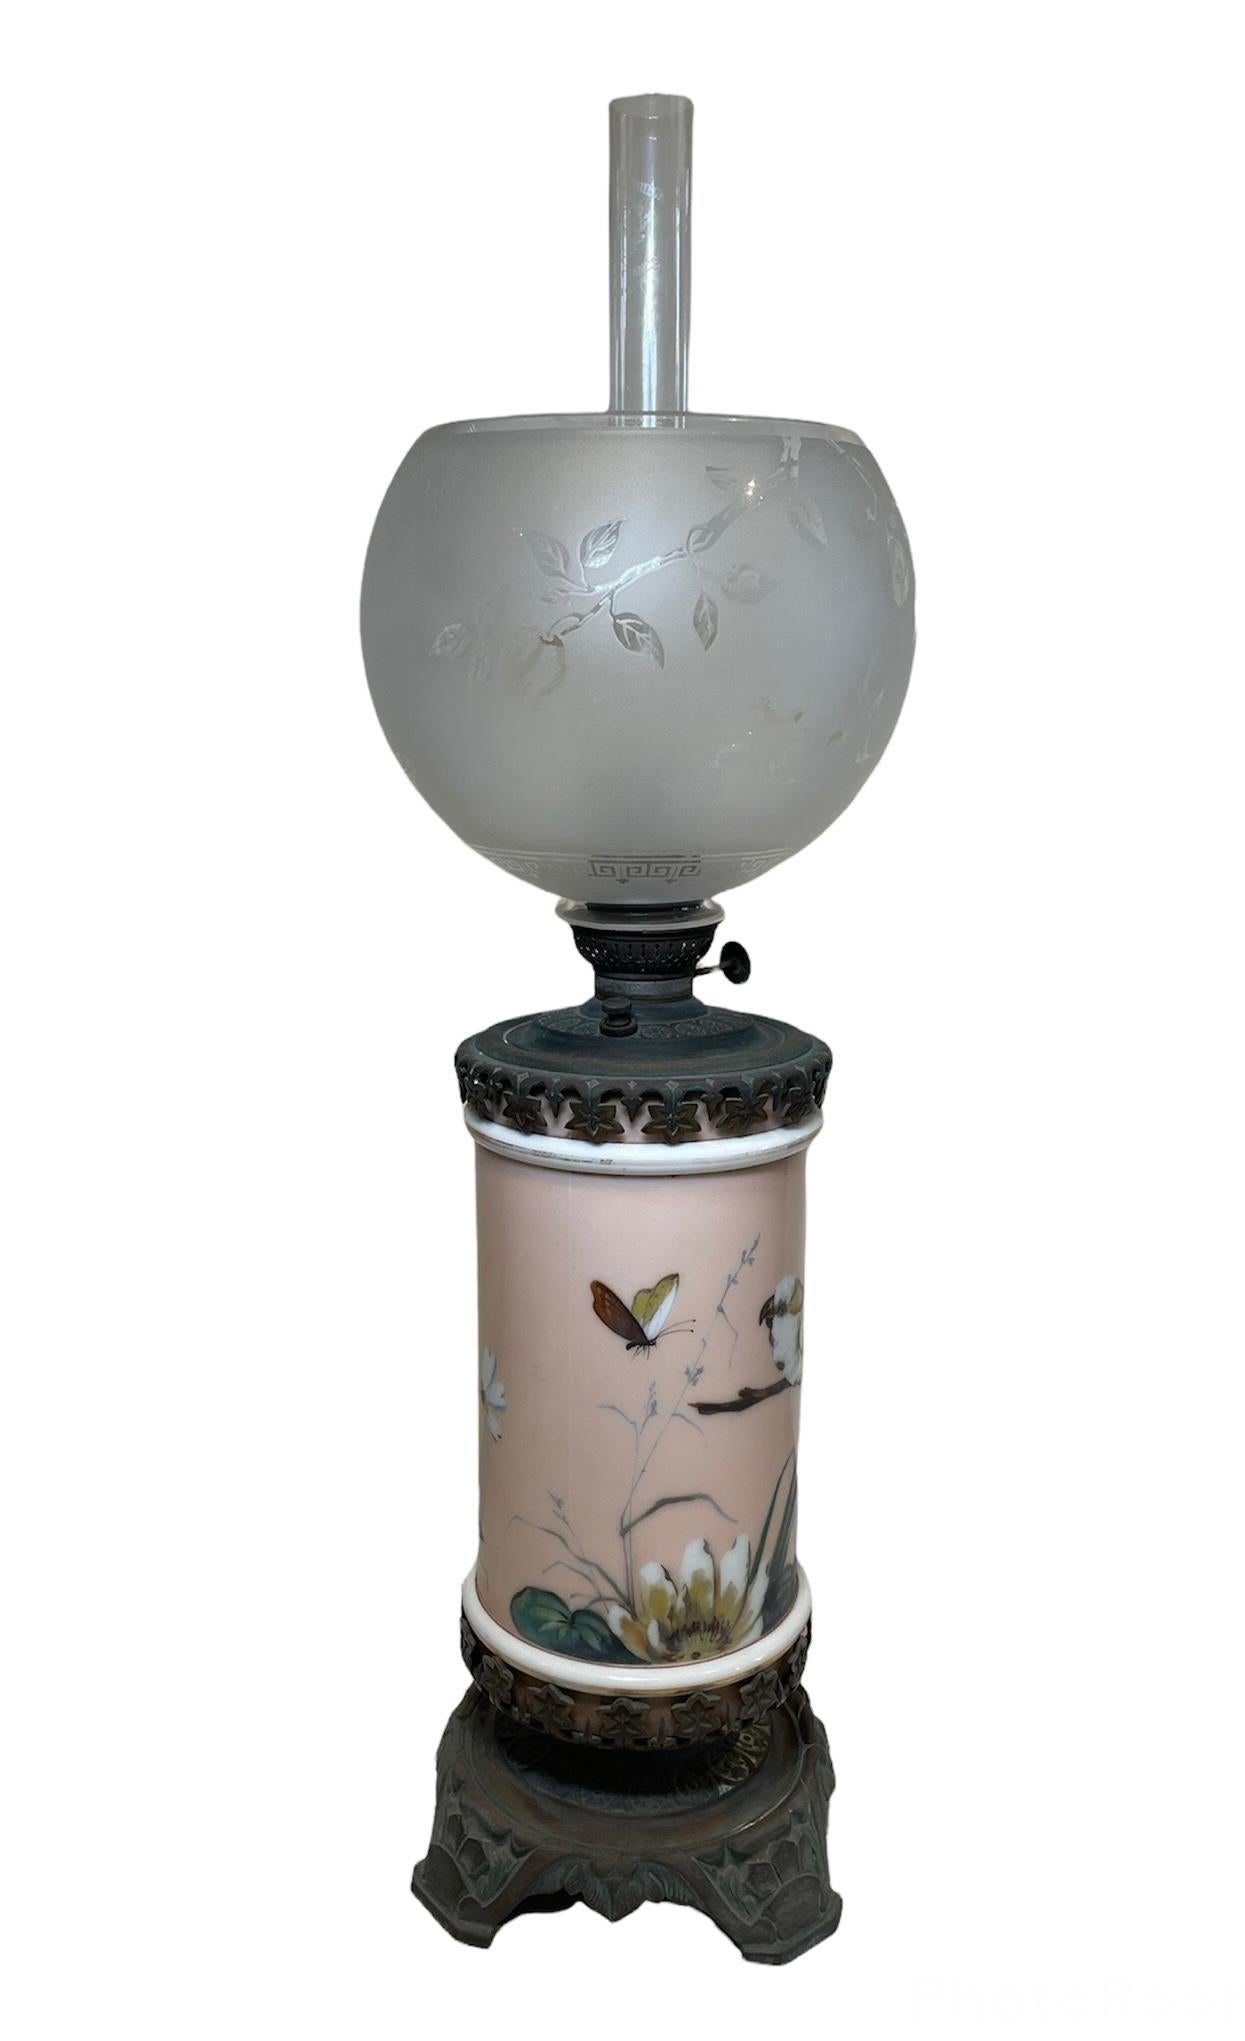 Il s'agit d'une lampe à huile de type ouragan, fabriquée en bronze et en porcelaine. Il s'agit d'une fontaine en porcelaine de forme cylindrique peinte à la main sur un fond rose pâle agrémenté de quelques fleurs et d'une scène de nature